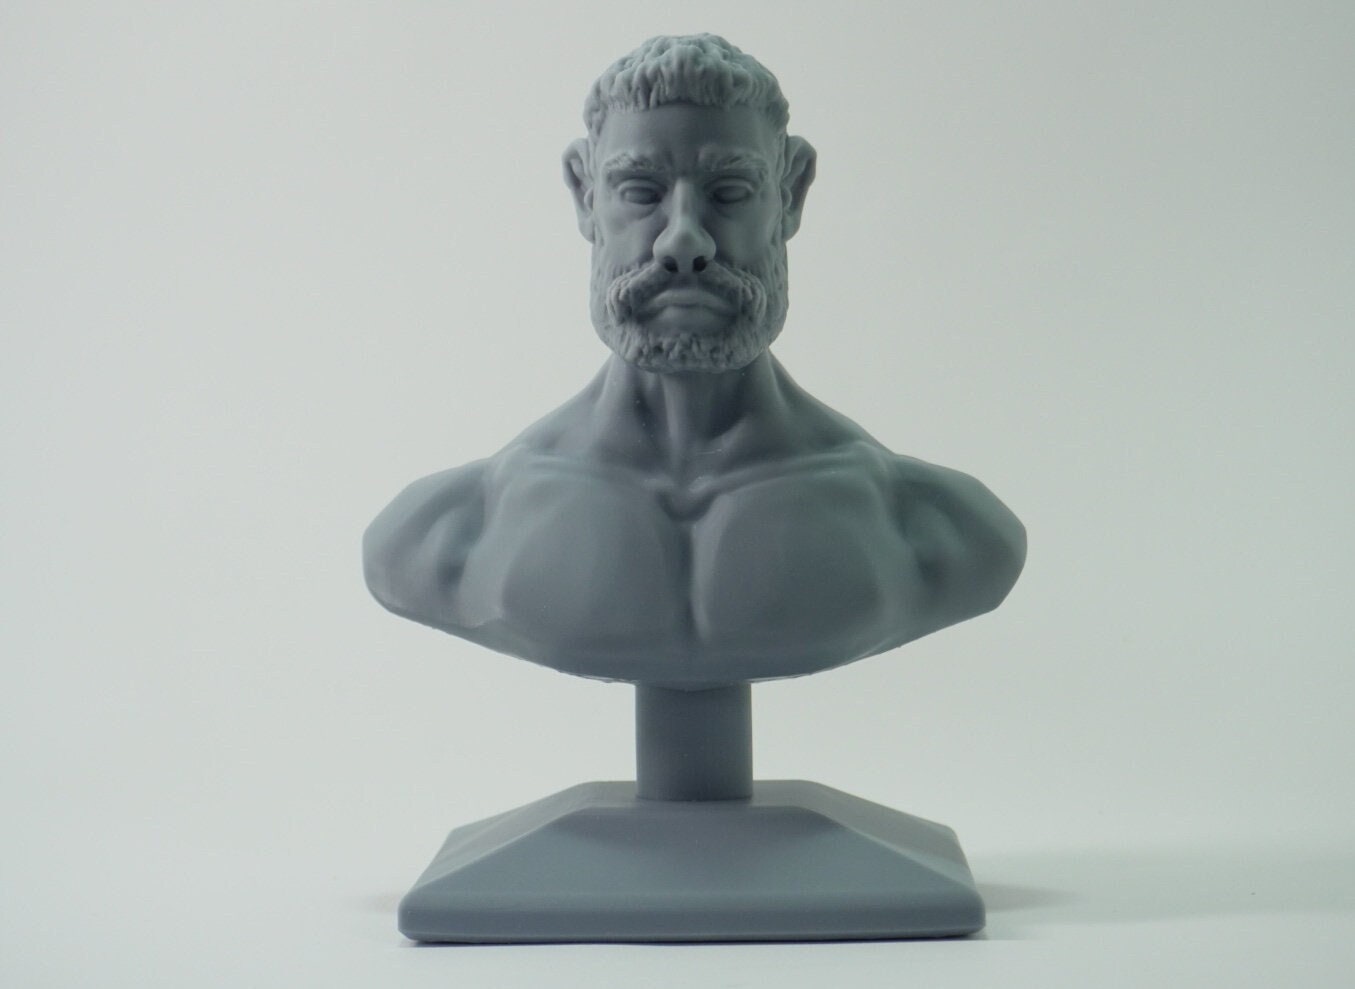 3D Printable Bobbin Holder by Johnny E.